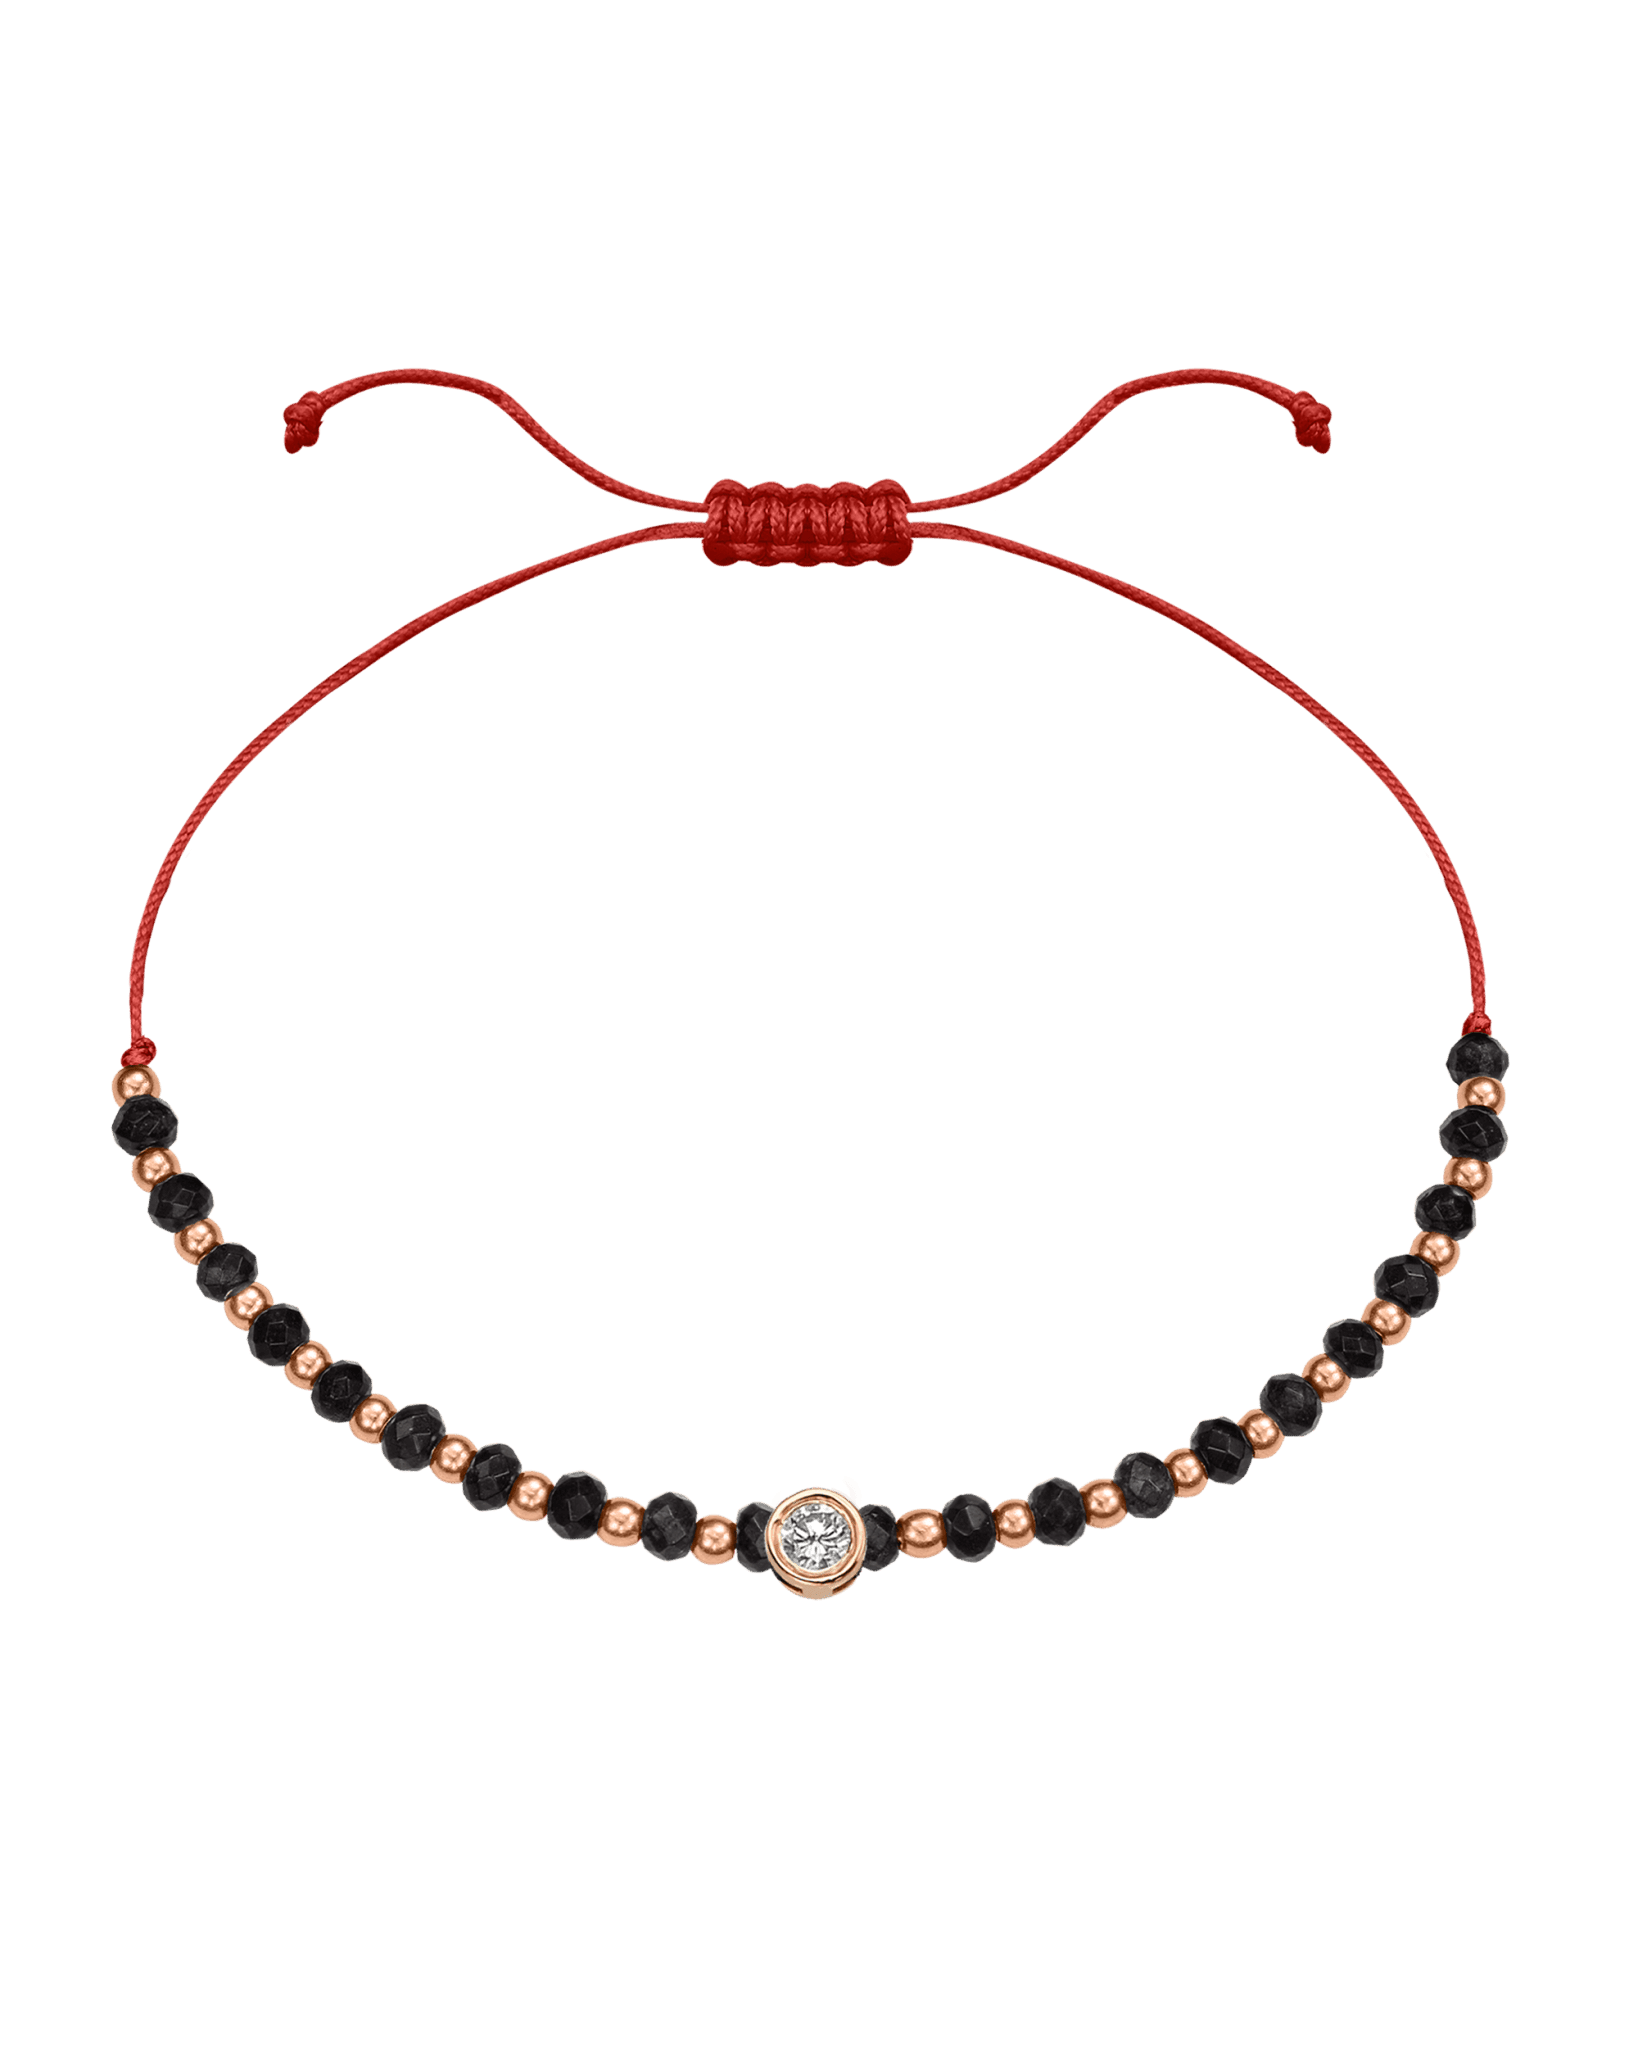 Black Onyx Gemstone String of Love Bracelet for Protection - 14K Rose Gold Bracelets 14K Solid Gold Red Large: 0.1ct 